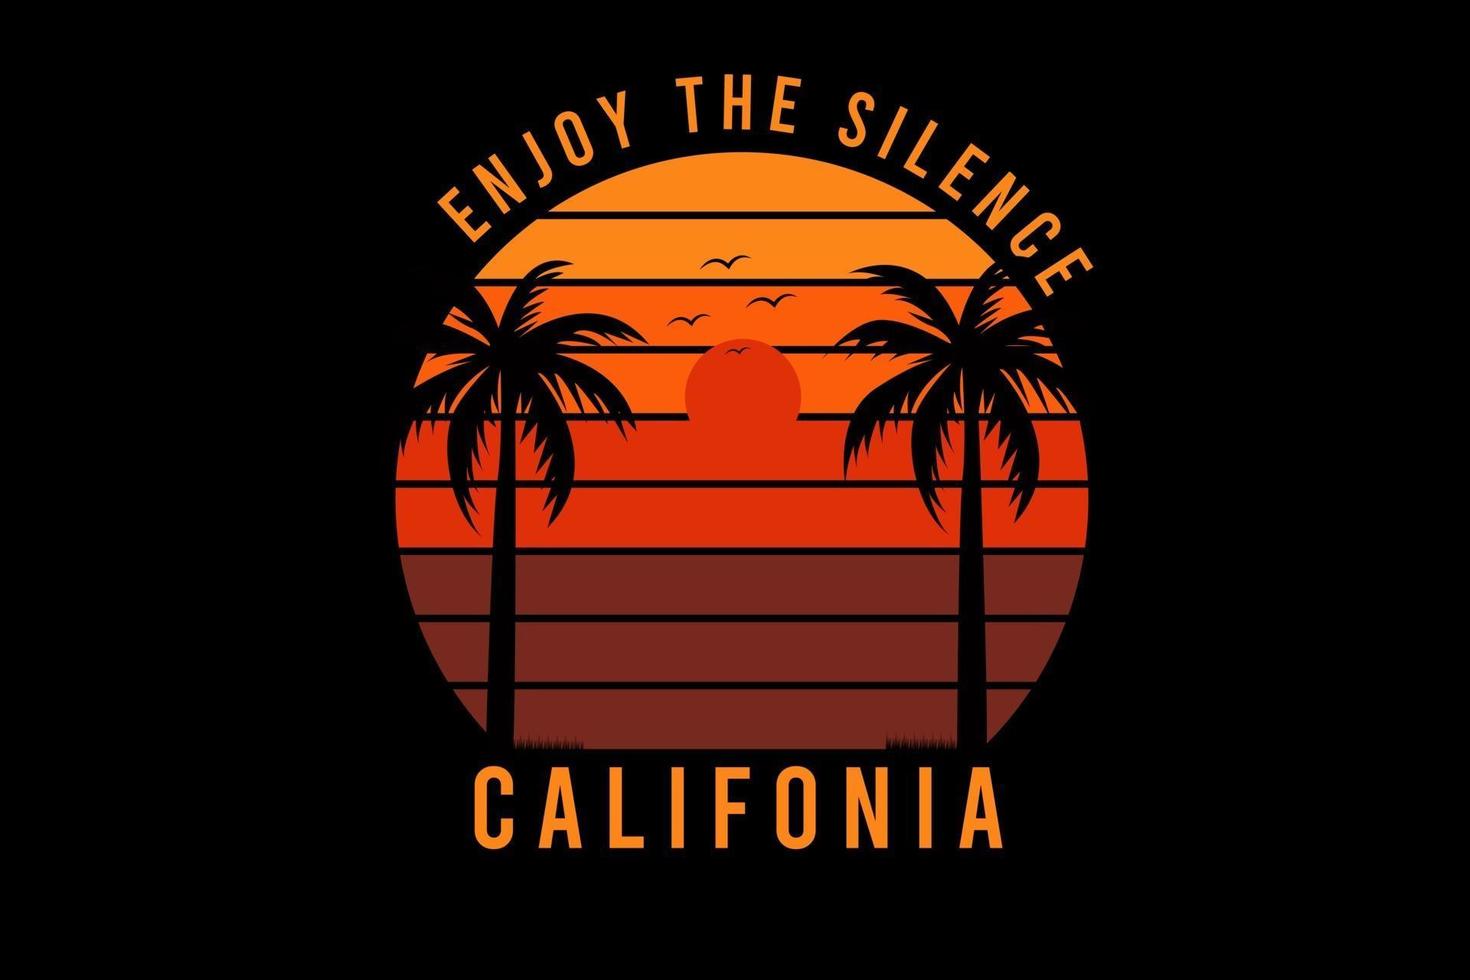 aproveite o silêncio califórnia cor laranja e vermelho vetor